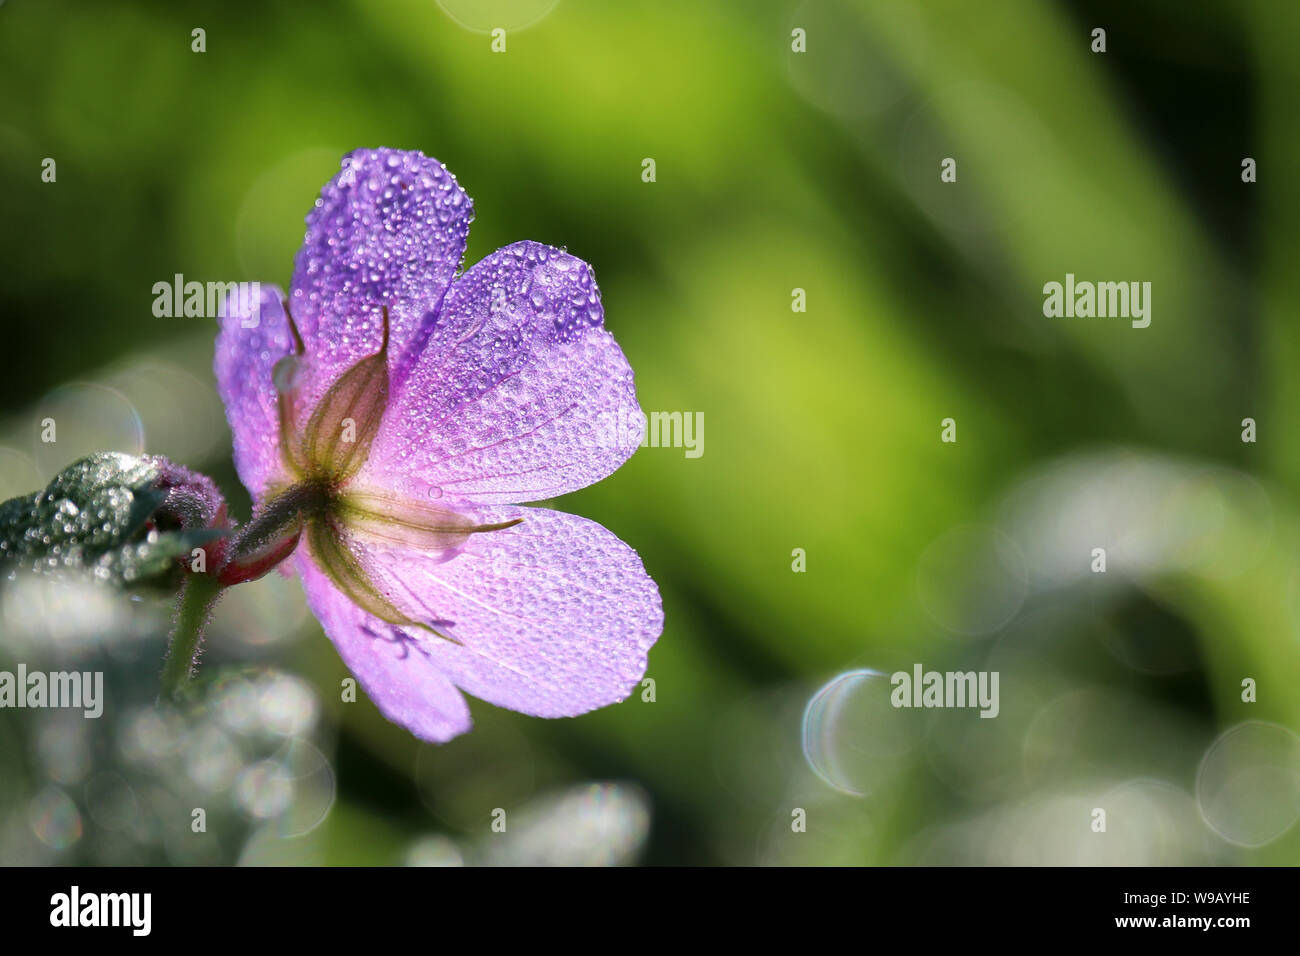 Rosée sur une fleur, géranium pratense fleurit sur une prairie d'été, macro shot dans la lumière du soleil. Plantes médicinales sur fond vert, gouttes d'eau sur les pétales bleu Banque D'Images